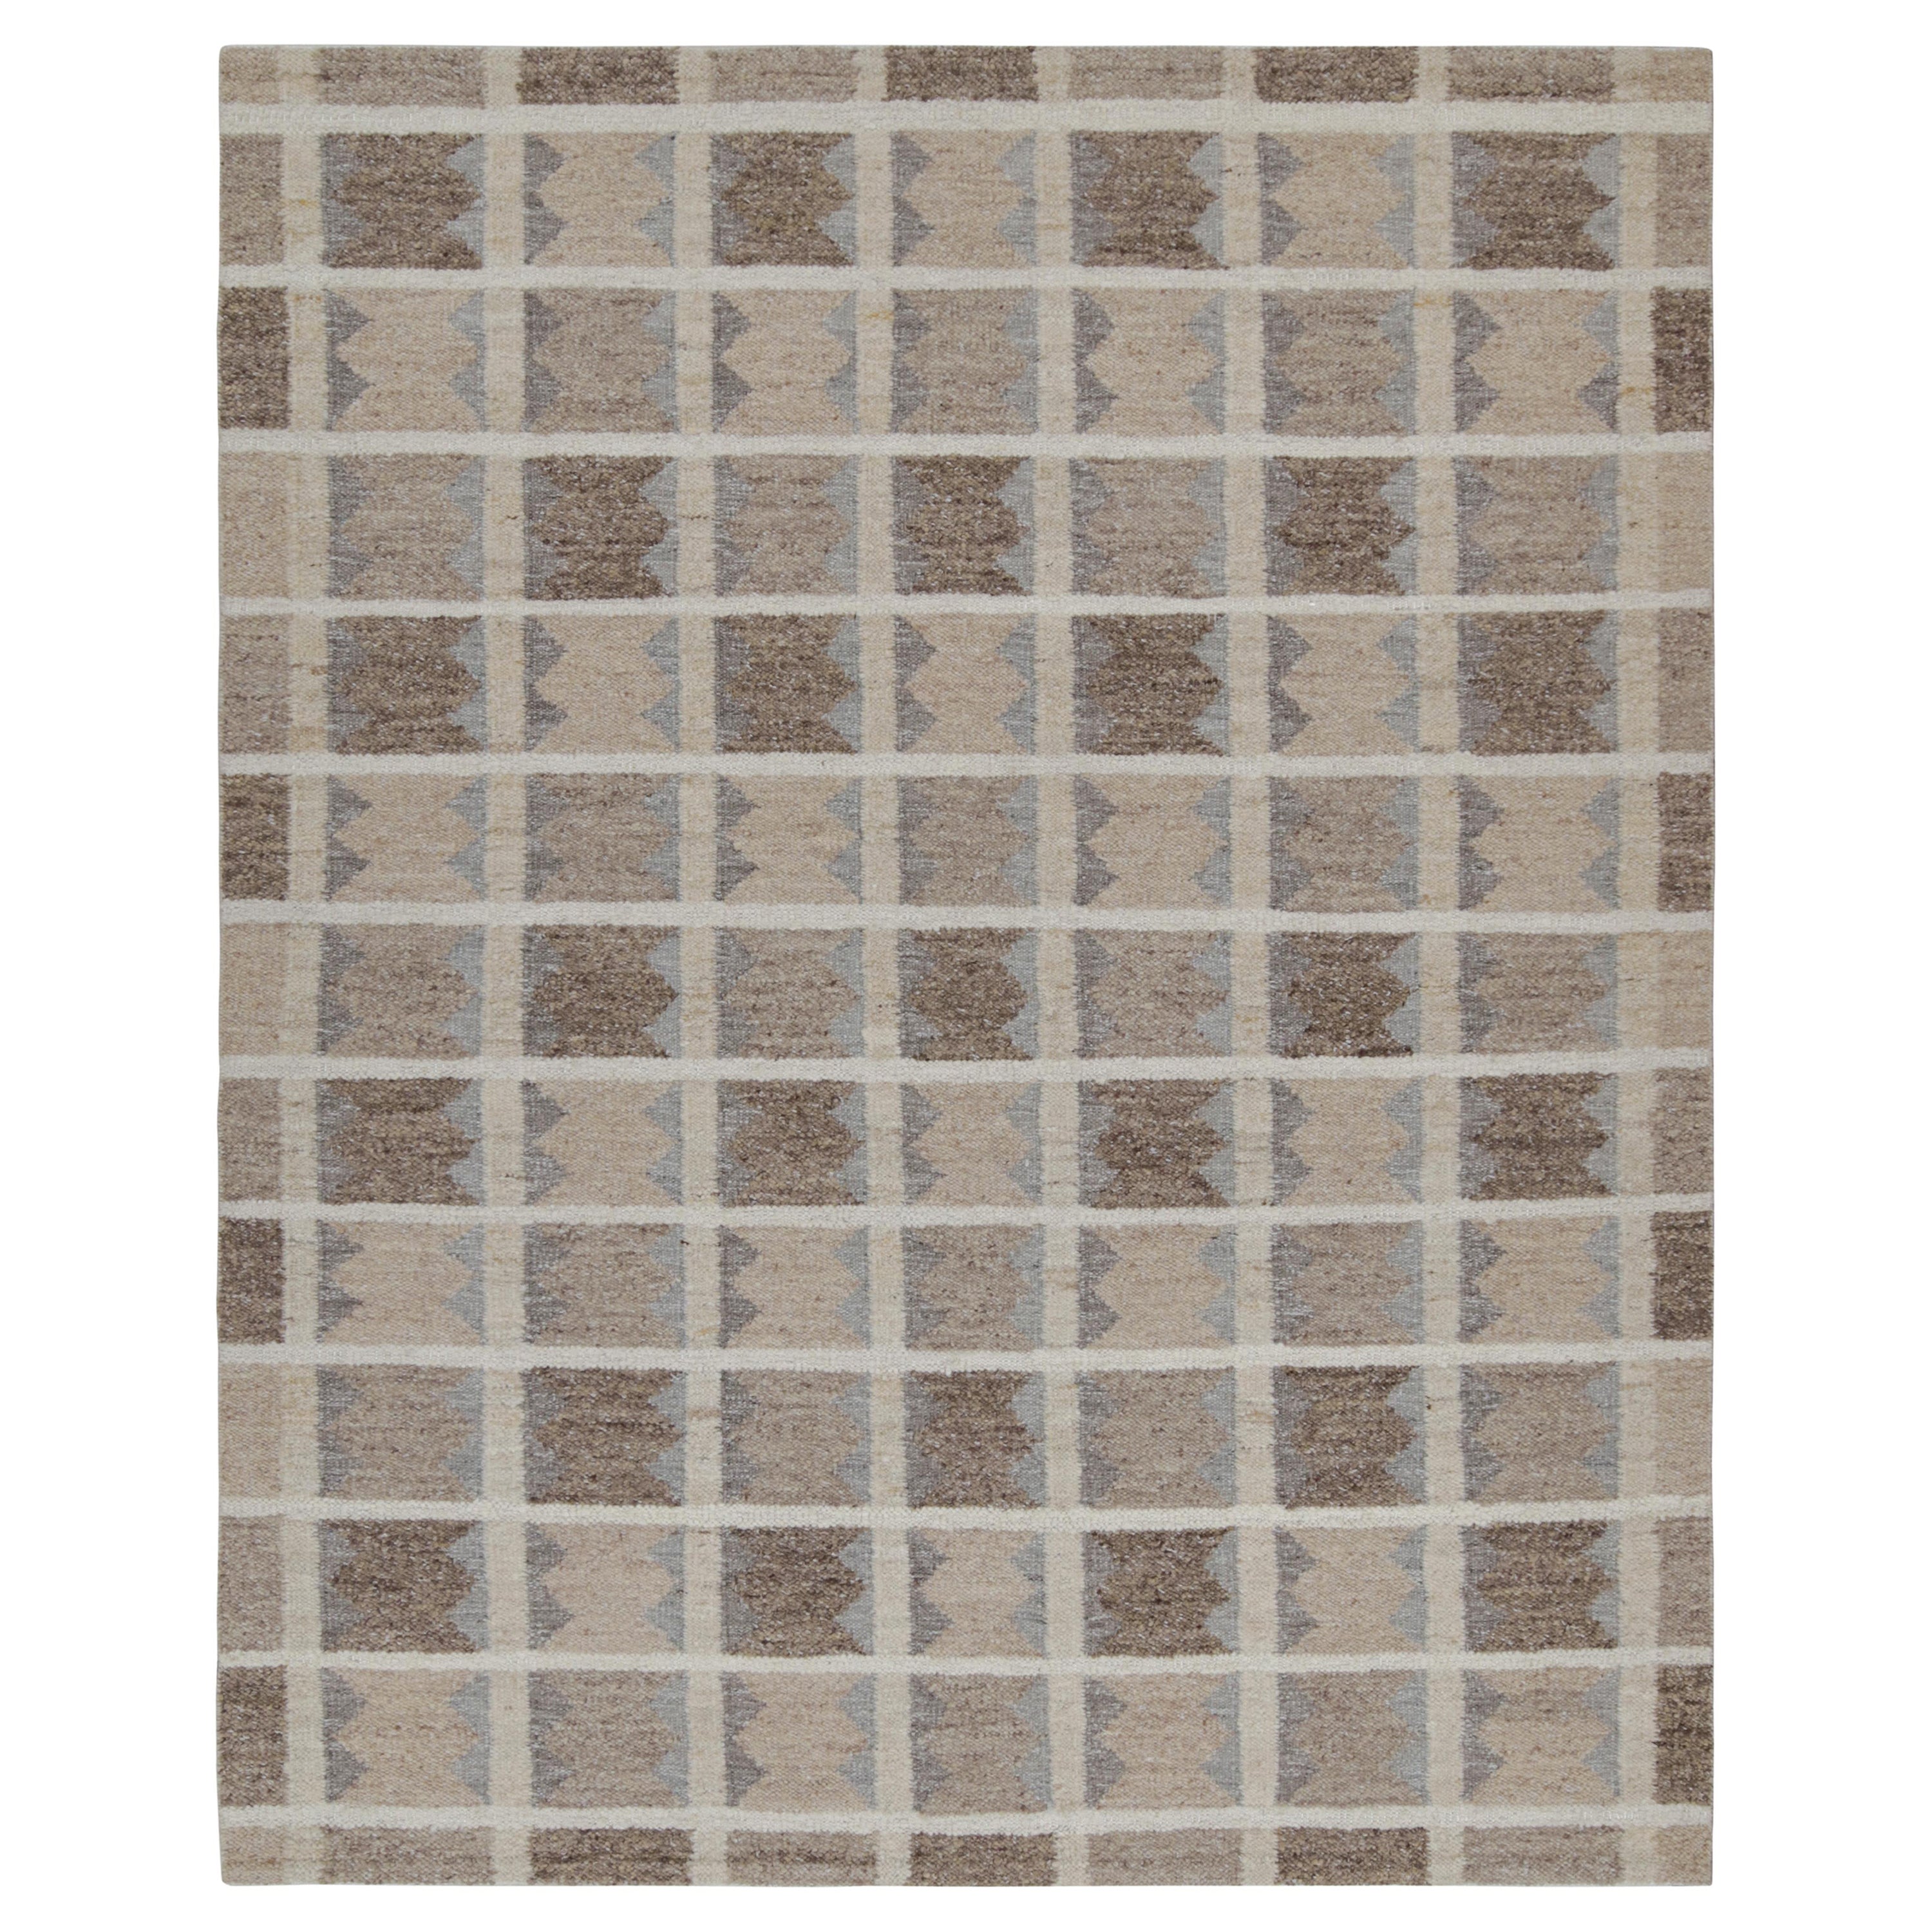 Rug & Kilim's Scandinavian Style Kilim in Beige, Brown & Gray Geometric Patterns (Kilim de style scandinave aux motifs géométriques beige, brun et gris)